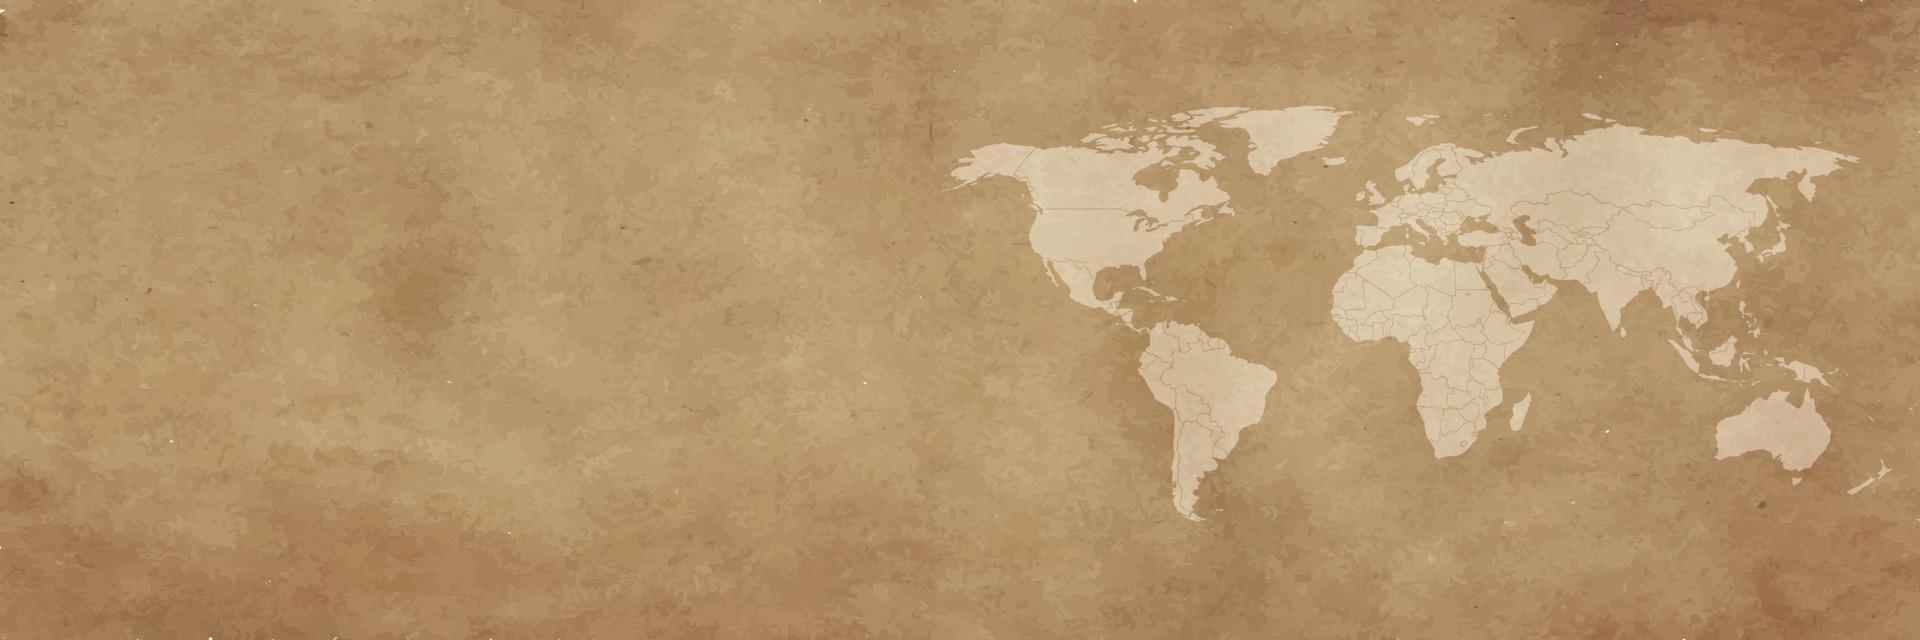 Weltkarte auf braunem Hintergrundbanner vektor